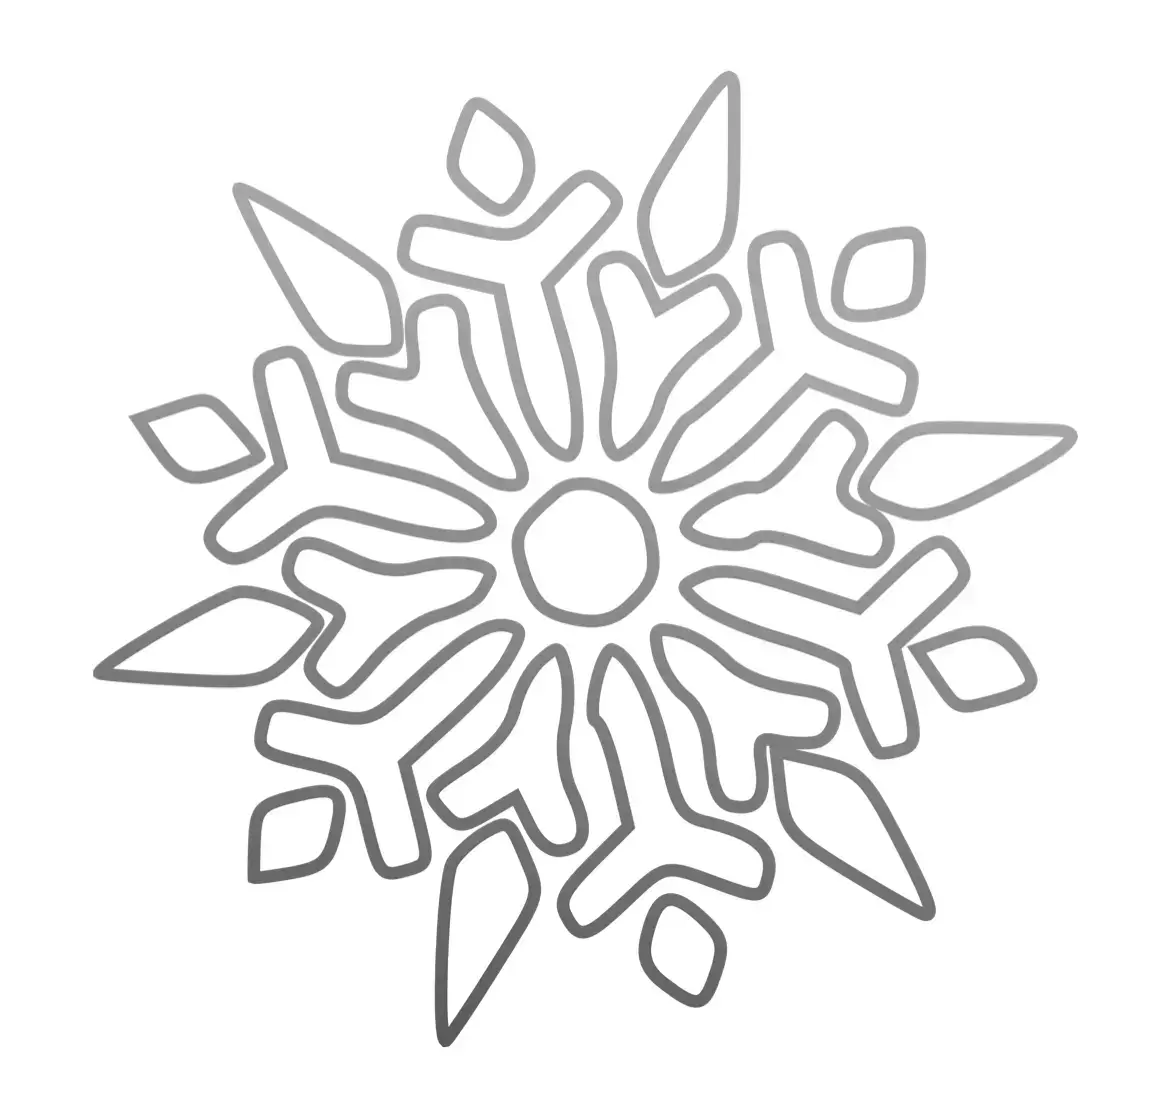 Schneespray-Schablone: Schneeflocke als Fensterdekoration